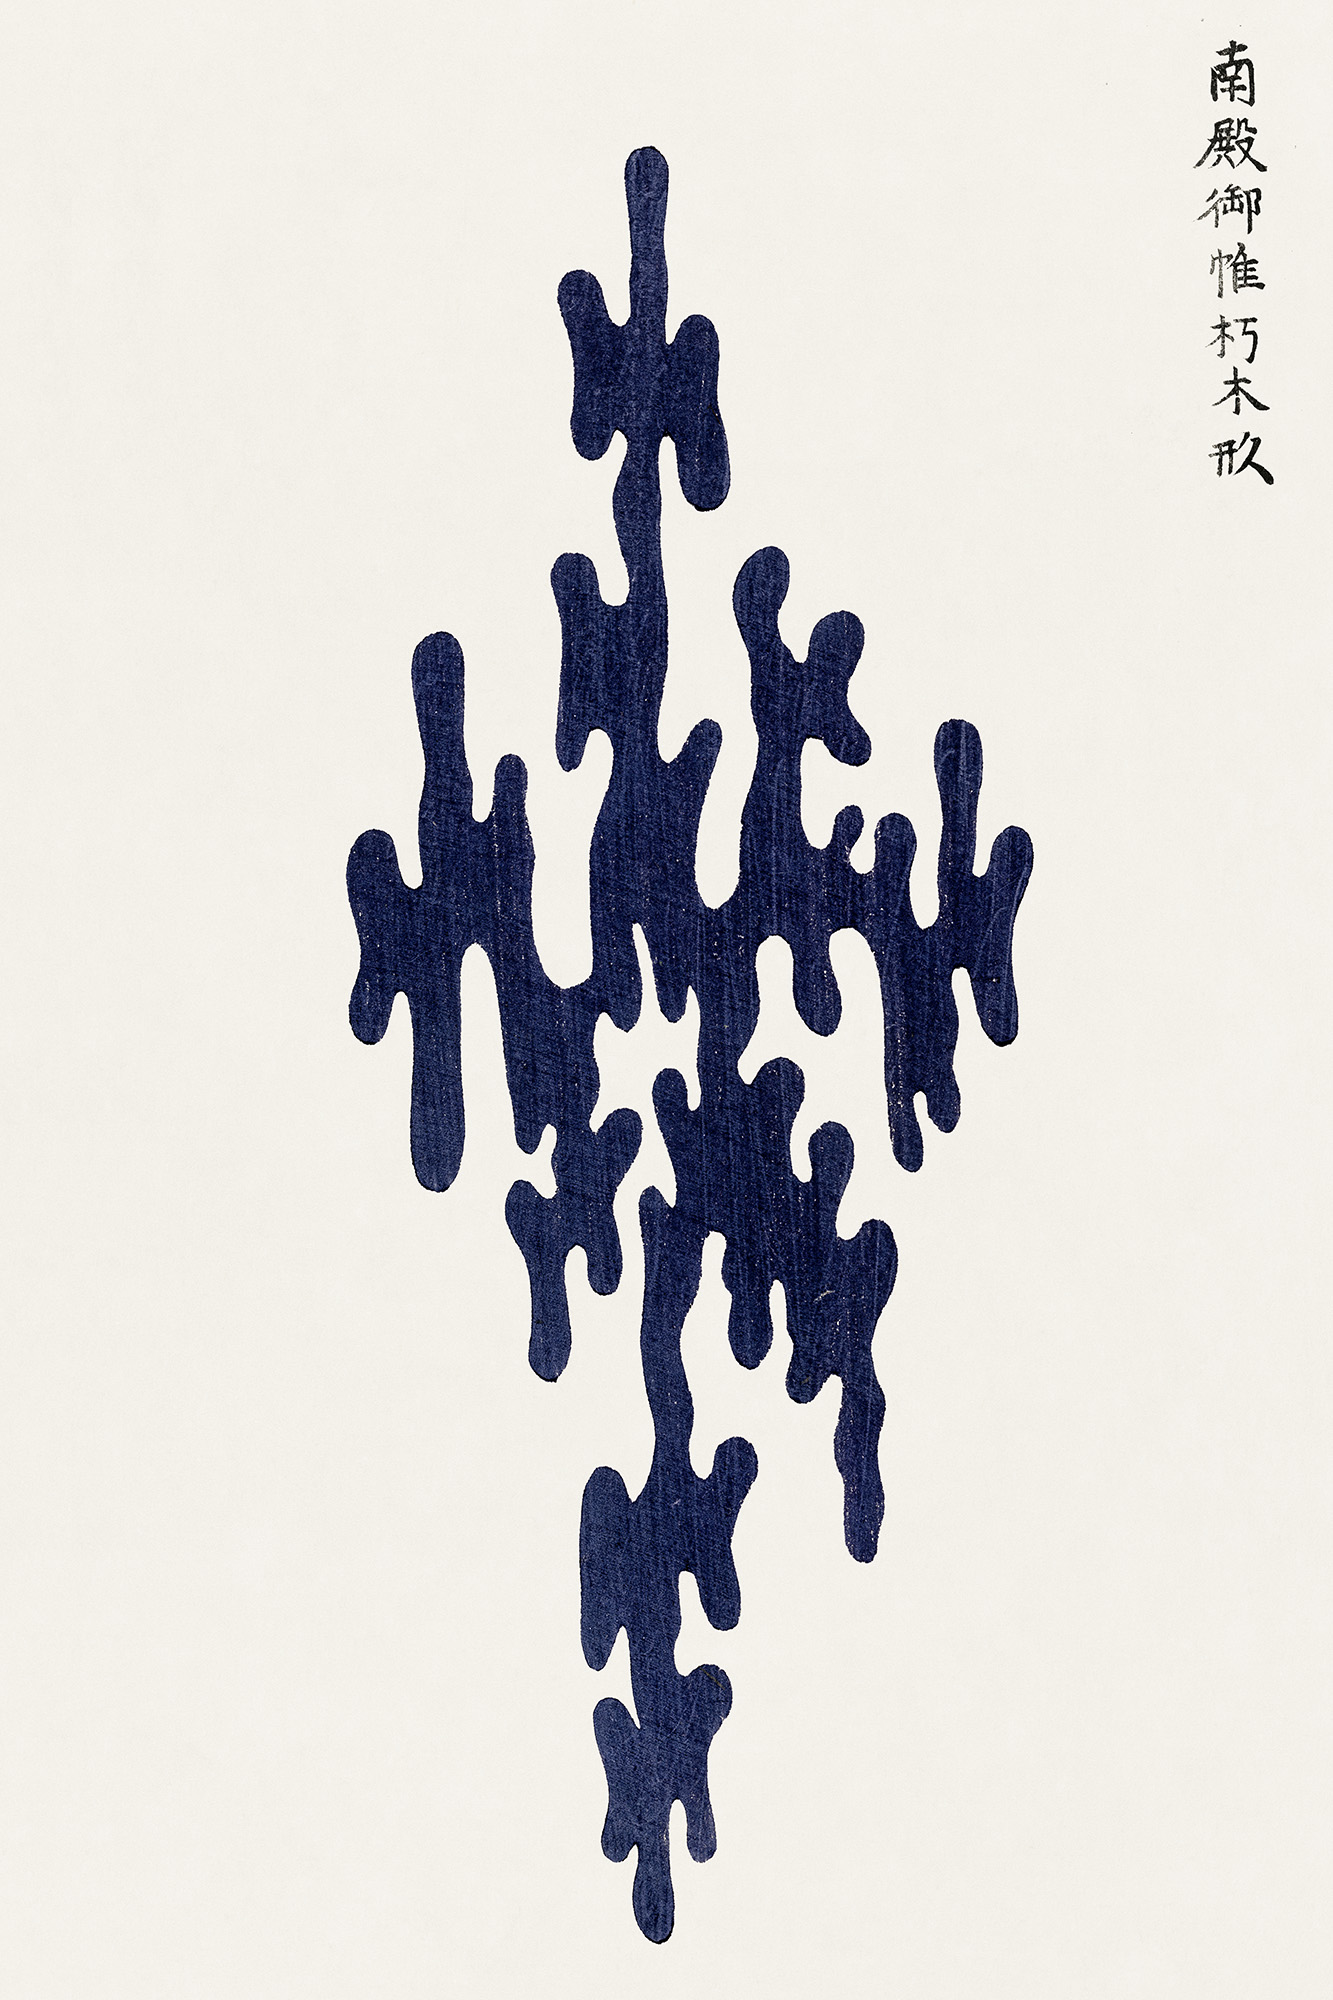 Affiche minimaliste estampe japonaise